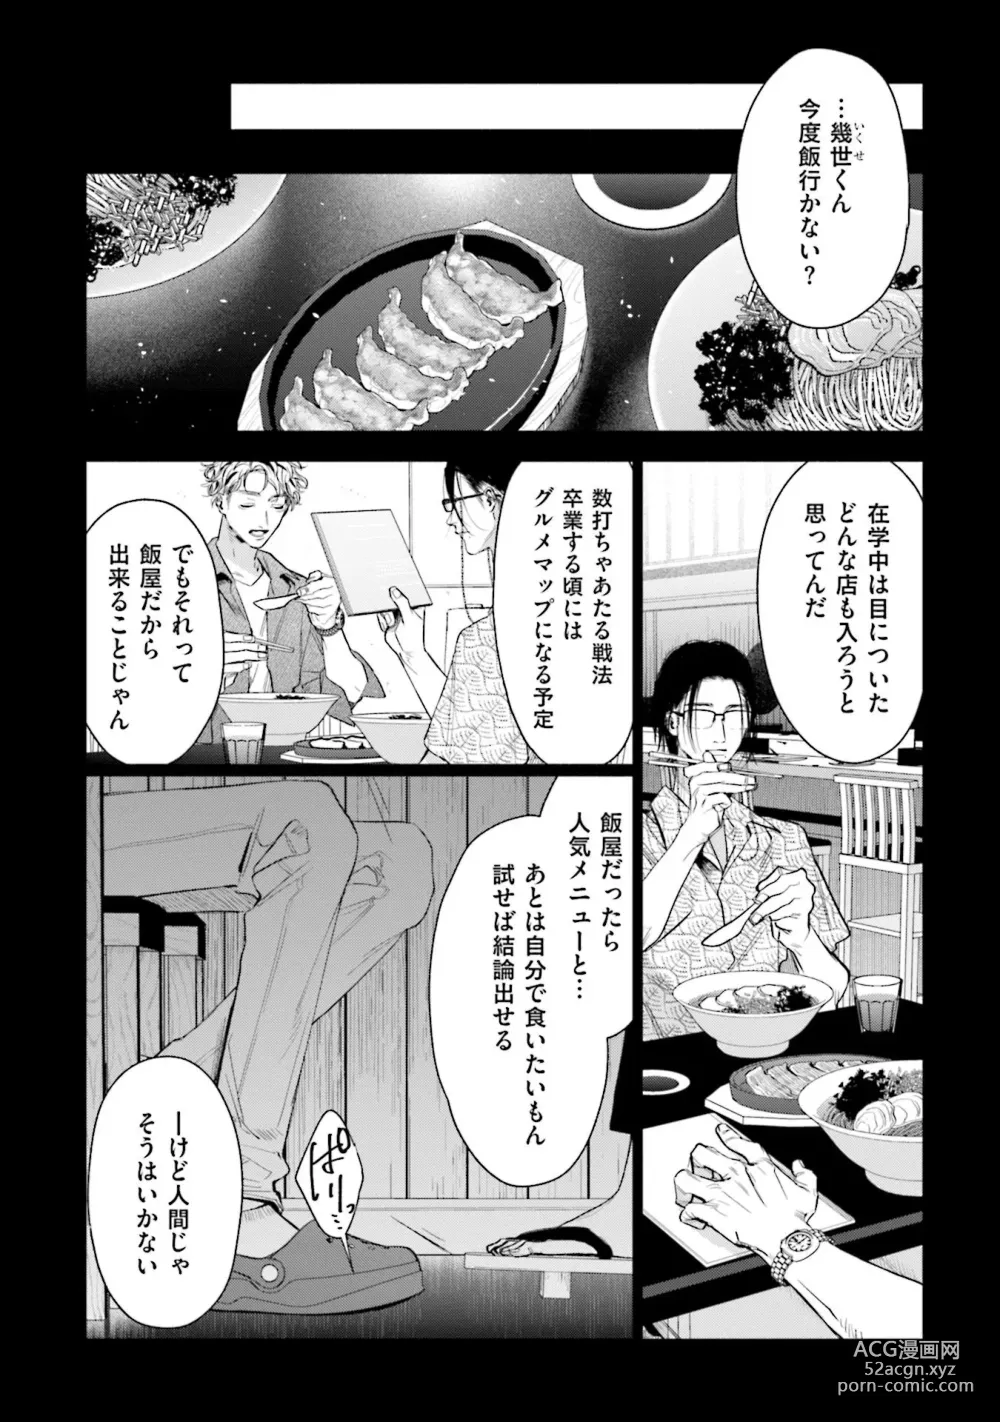 Page 8 of manga Hitoriyogari no Vanilla